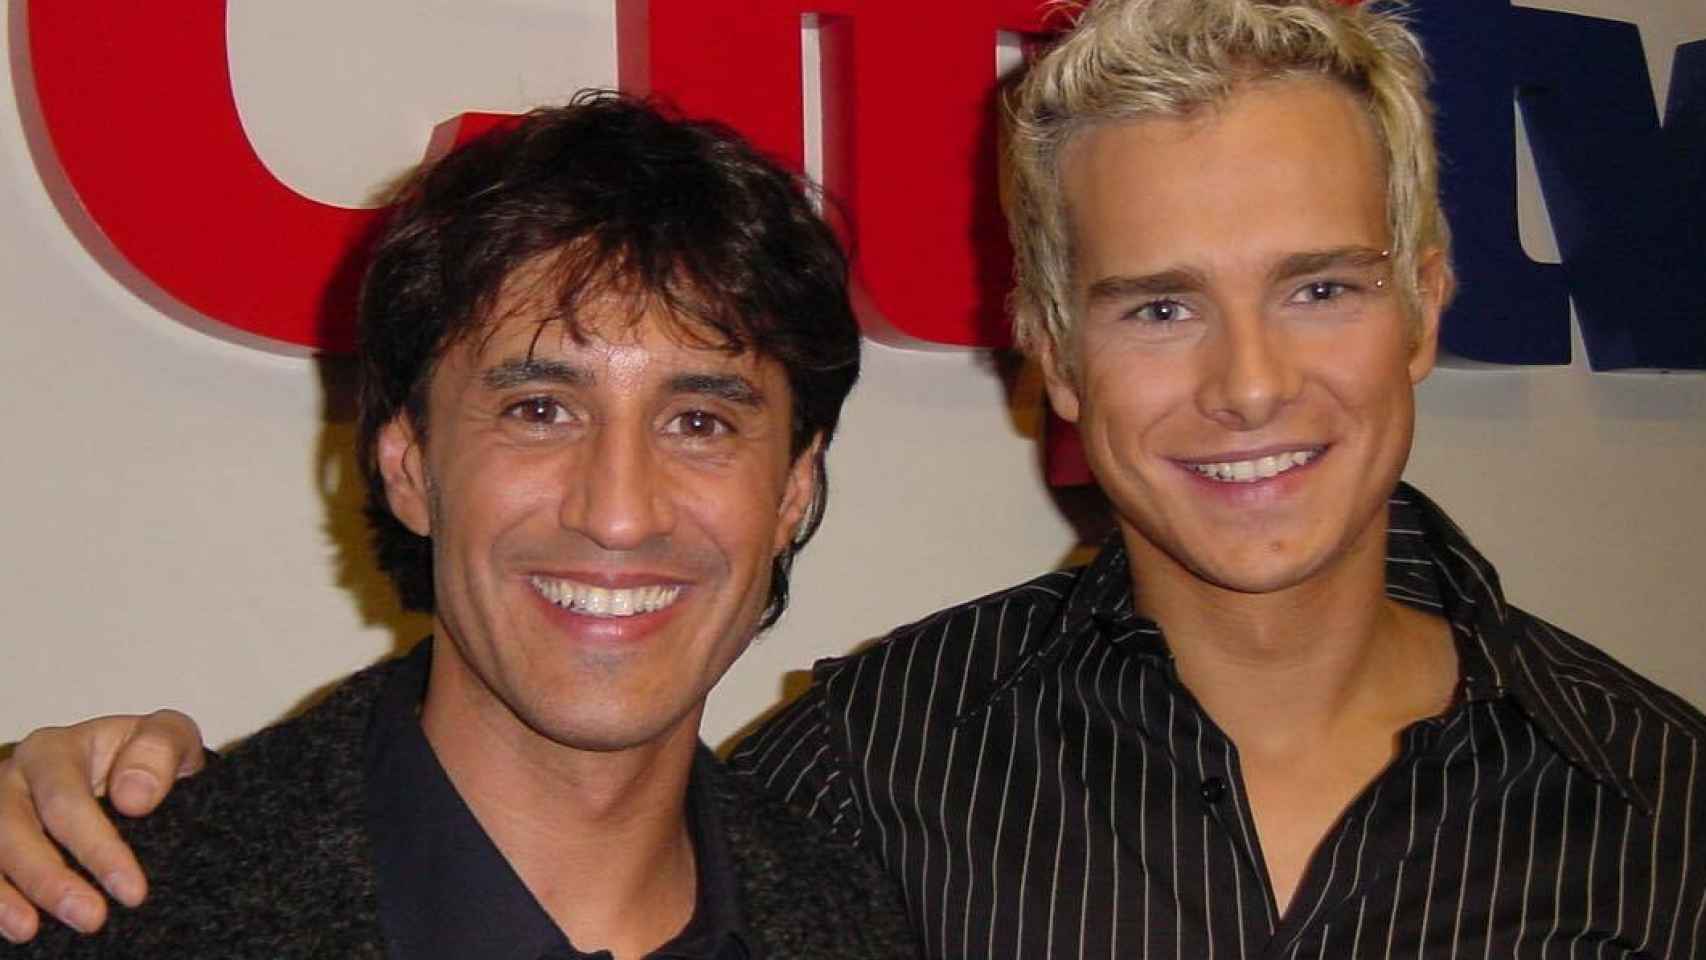 Enric, en una foto con Sergio Dalma en sus inicios televisivos.